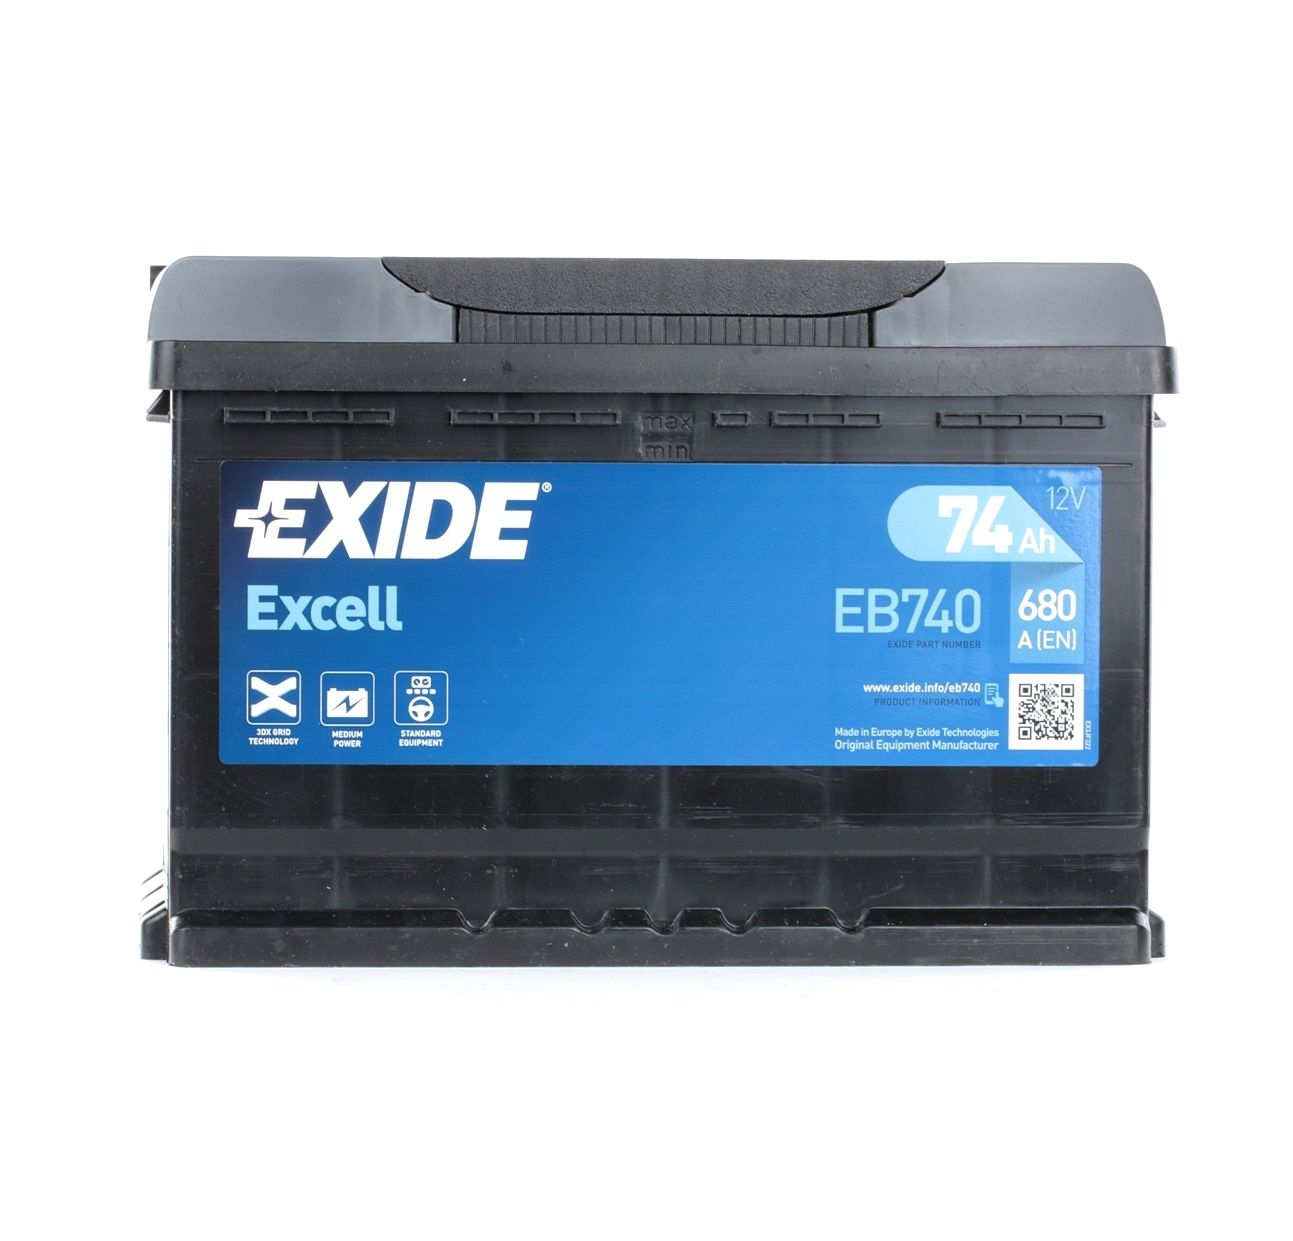 EXIDE EXCELL EB740 Batteria 12V 74Ah 680A B13 Accumulatore piombo-acido